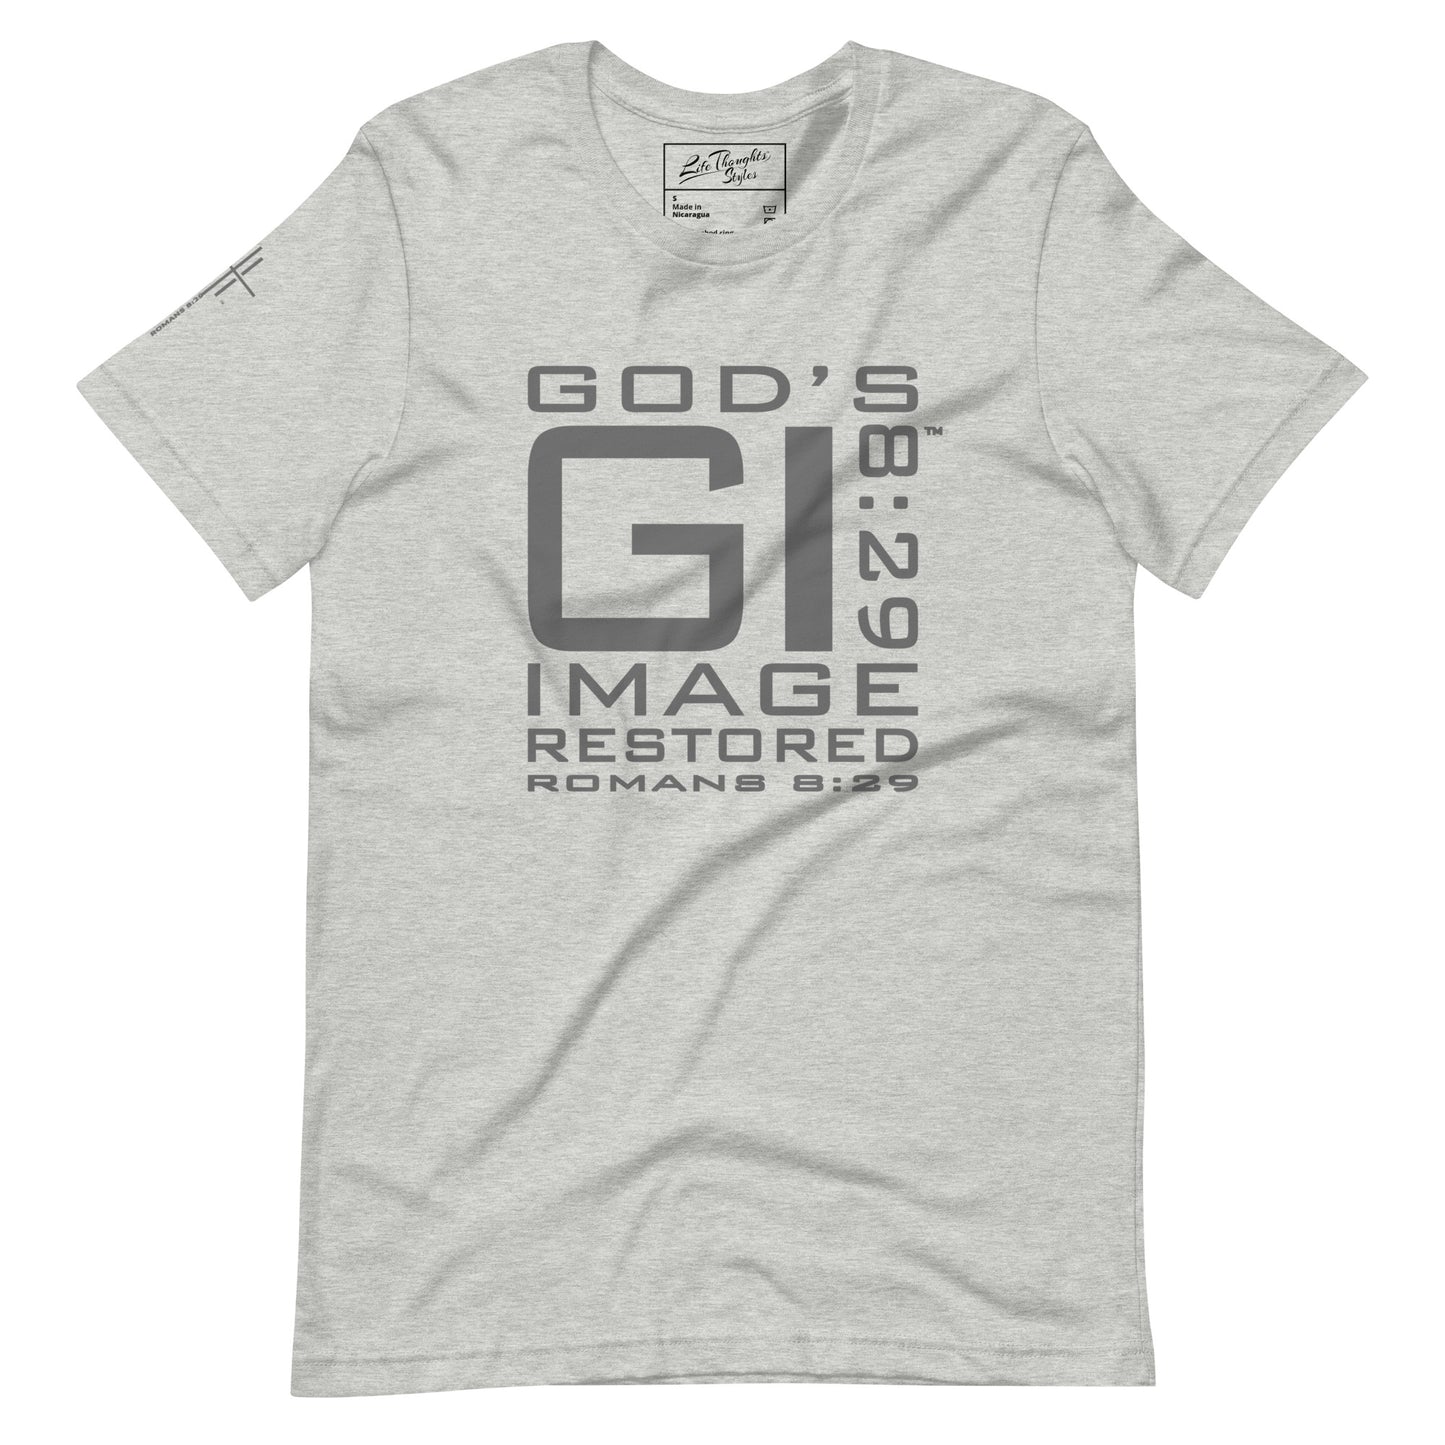 GI 8:29 (God's Image Restored) Tee - White/Gray/Ash